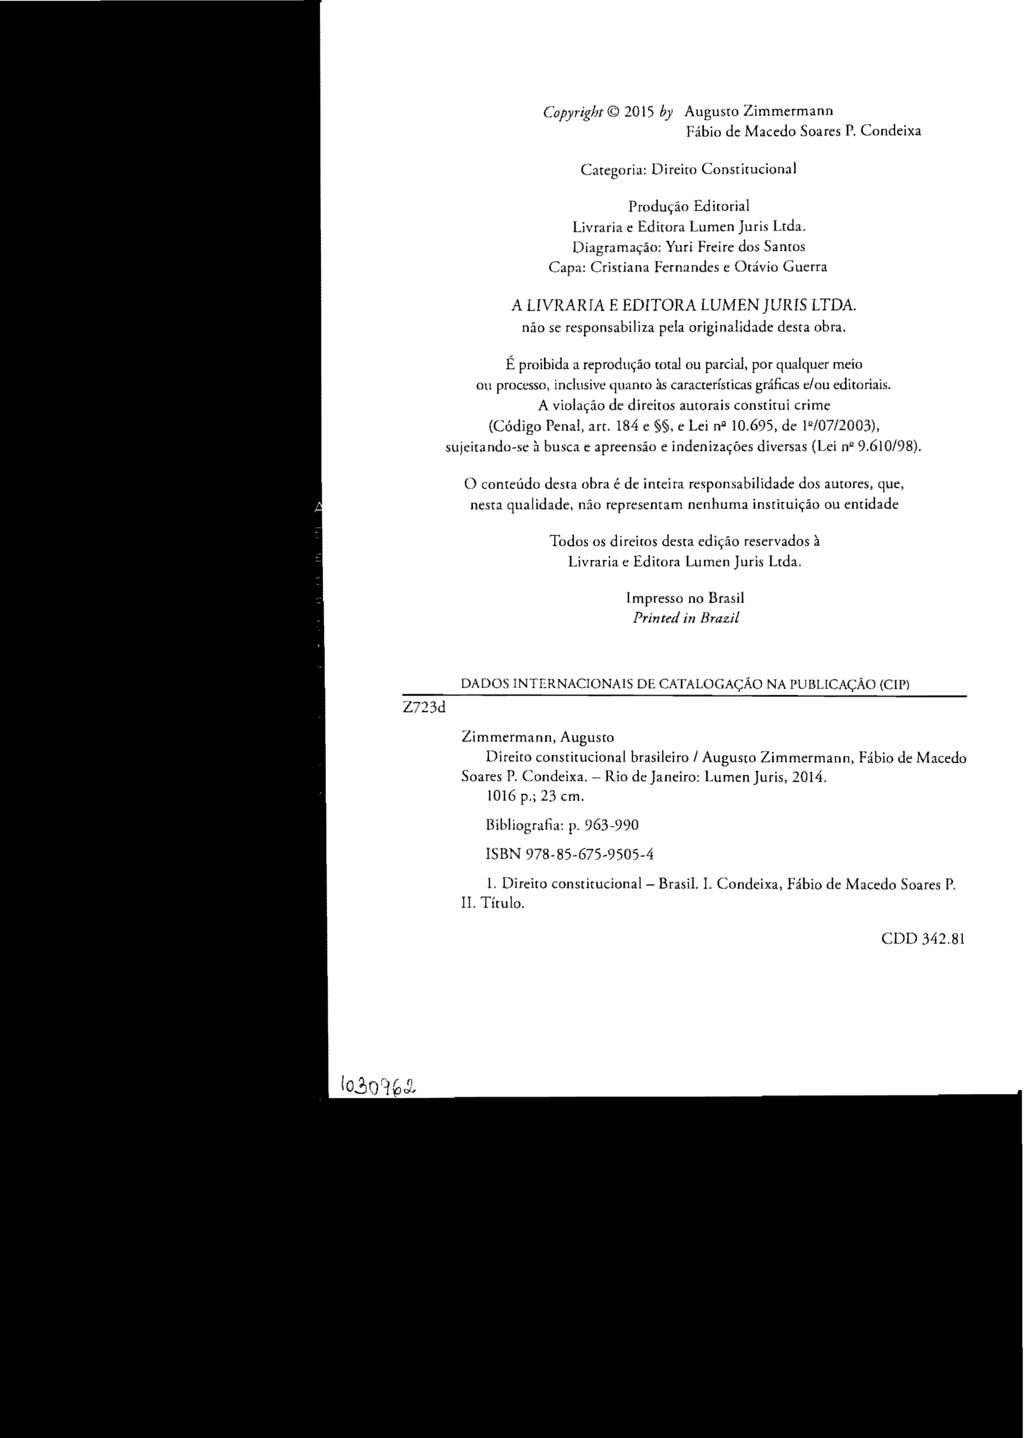 Copyright 2015 by Augusto Zimmermann Fábio de Macedo Soares P. Condeixa Categoria: Direito Constitucional Produçáo Ediwrial Livraria e Editora Lumen Juris Ltda.